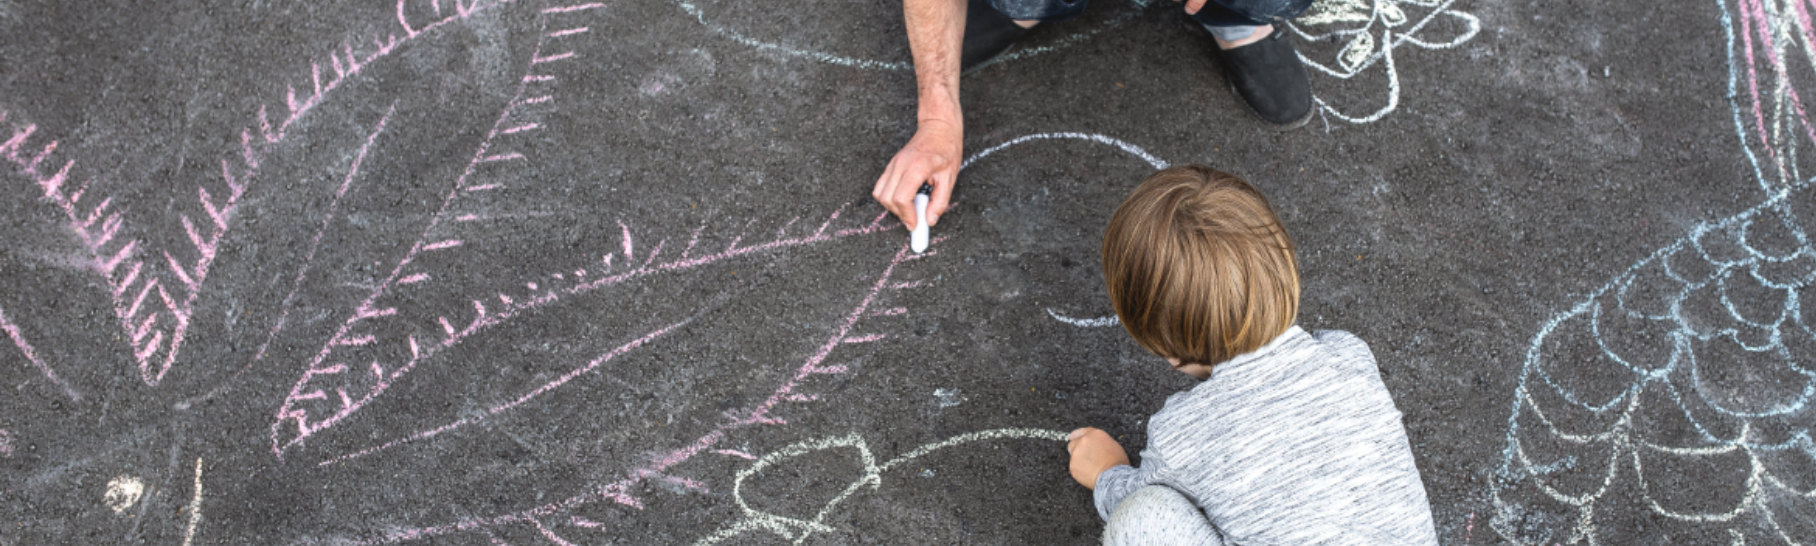 chalk art with child